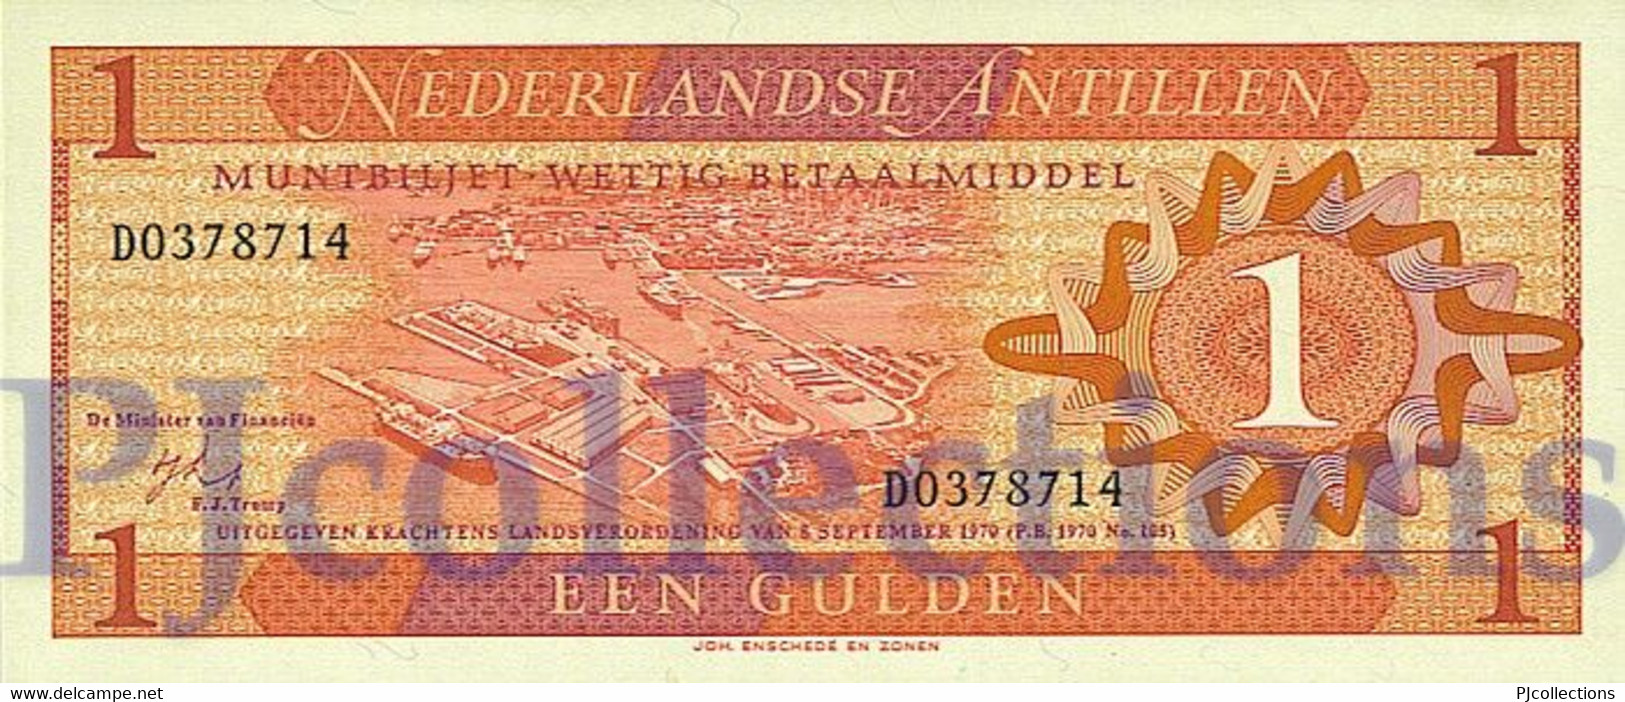 NETHERLANDS ANTILLES 1 GULDEN 1970 PICK 20a UNC - Nederlandse Antillen (...-1986)